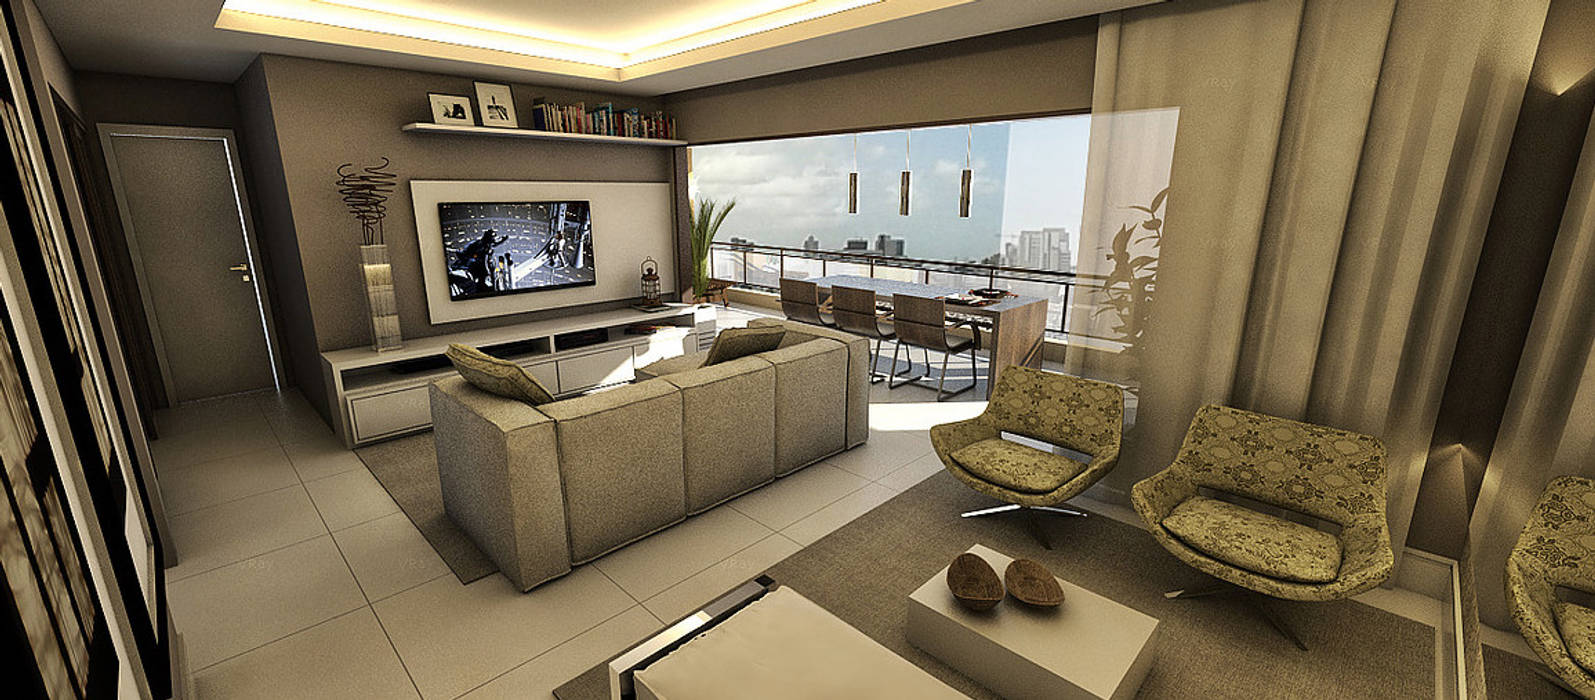 Living - Apartamento - Residencial Garibaldi Elegance - Salvador/BA Arquitetura do Brasil Salas de estar modernas